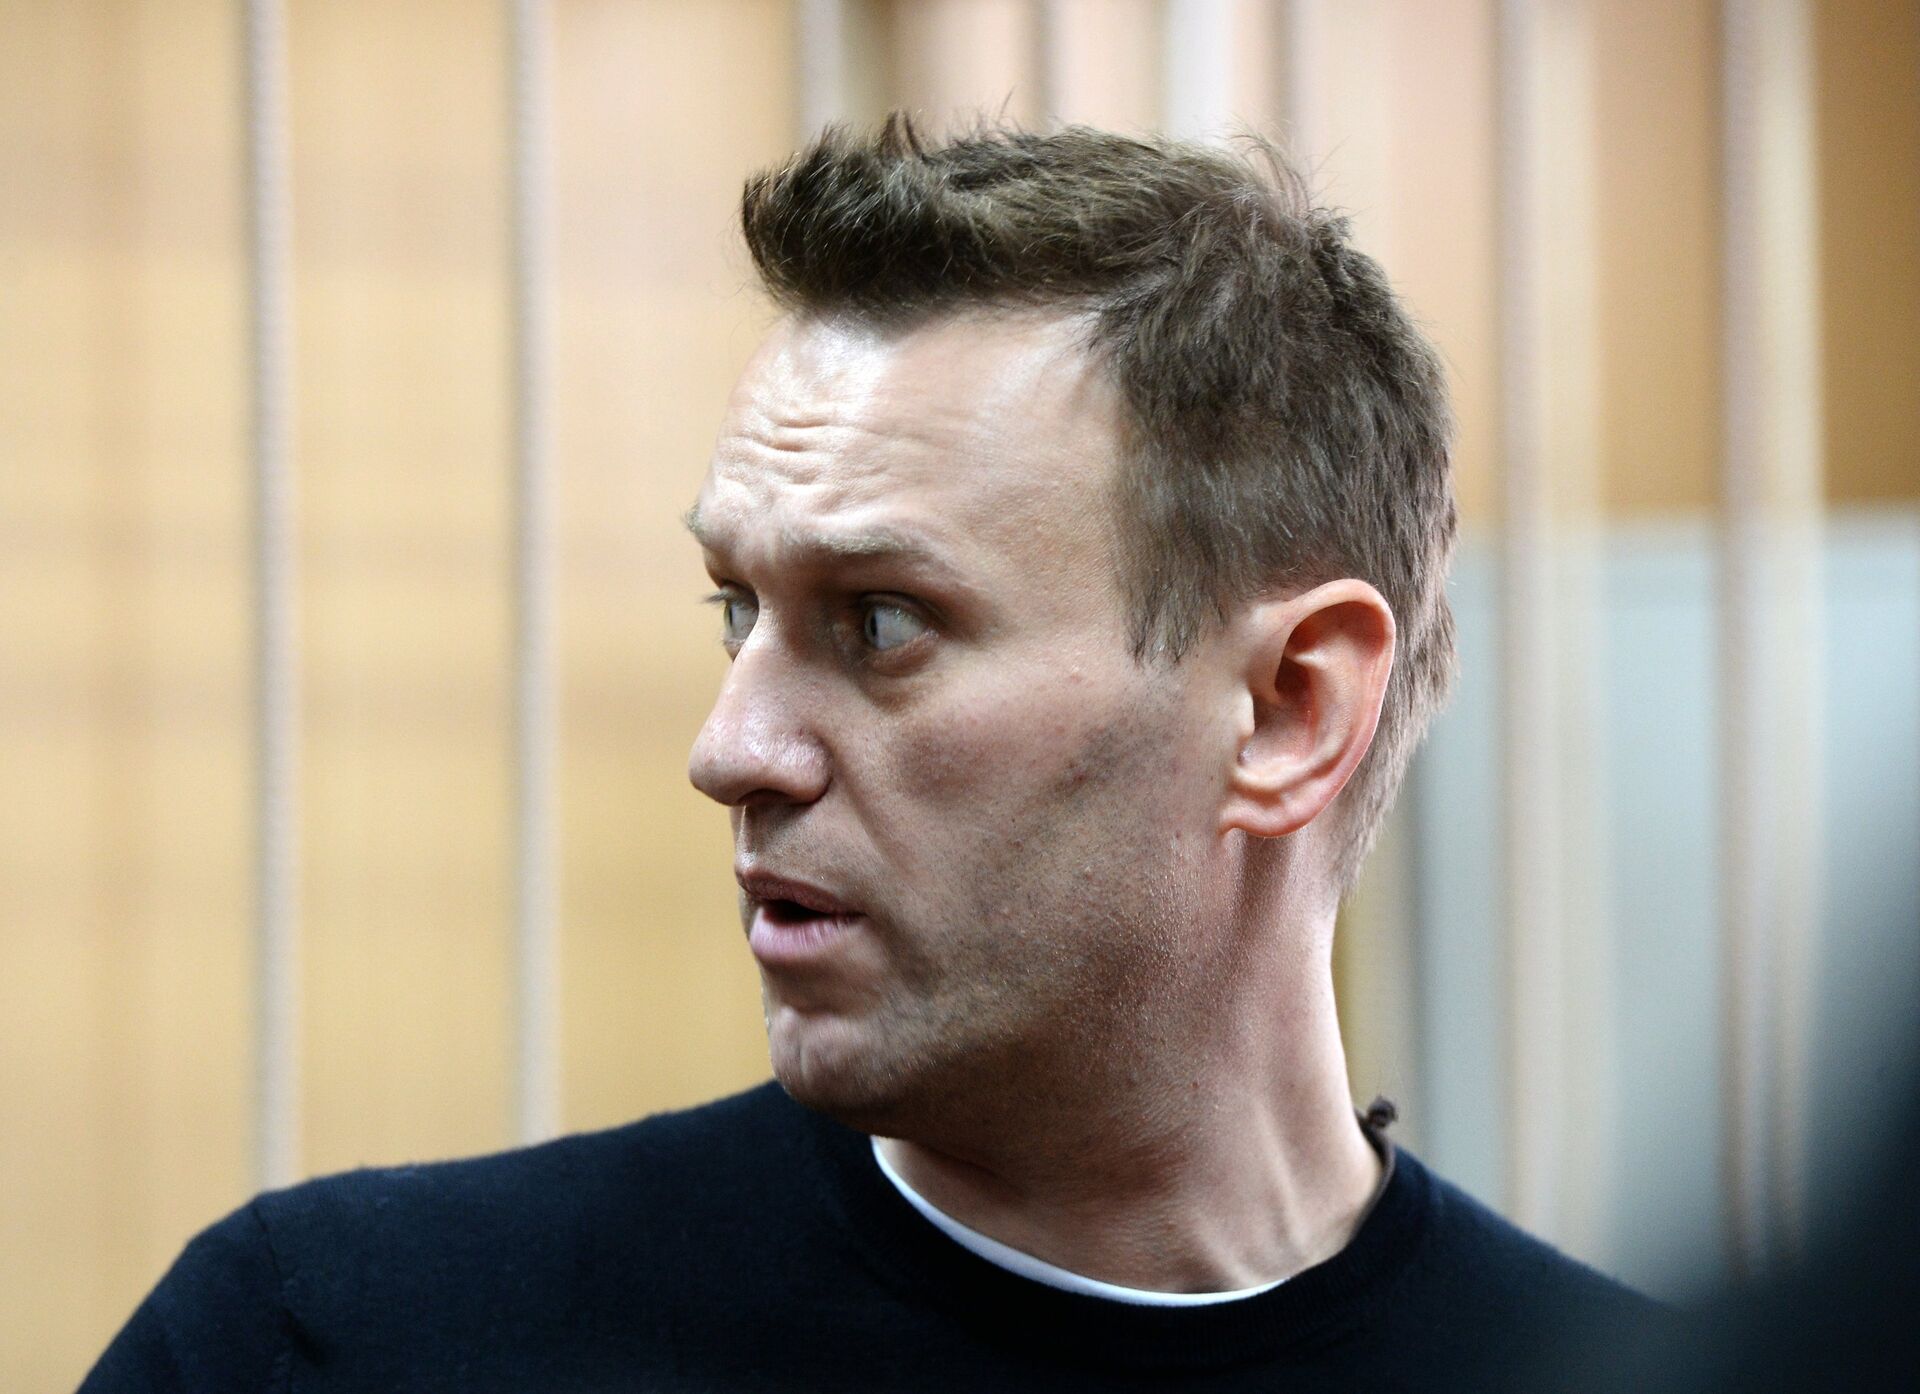 Рассмотрение дела об организации несанкционированной акции в отношении Алексея Навального - РИА Новости, 1920, 18.01.2021